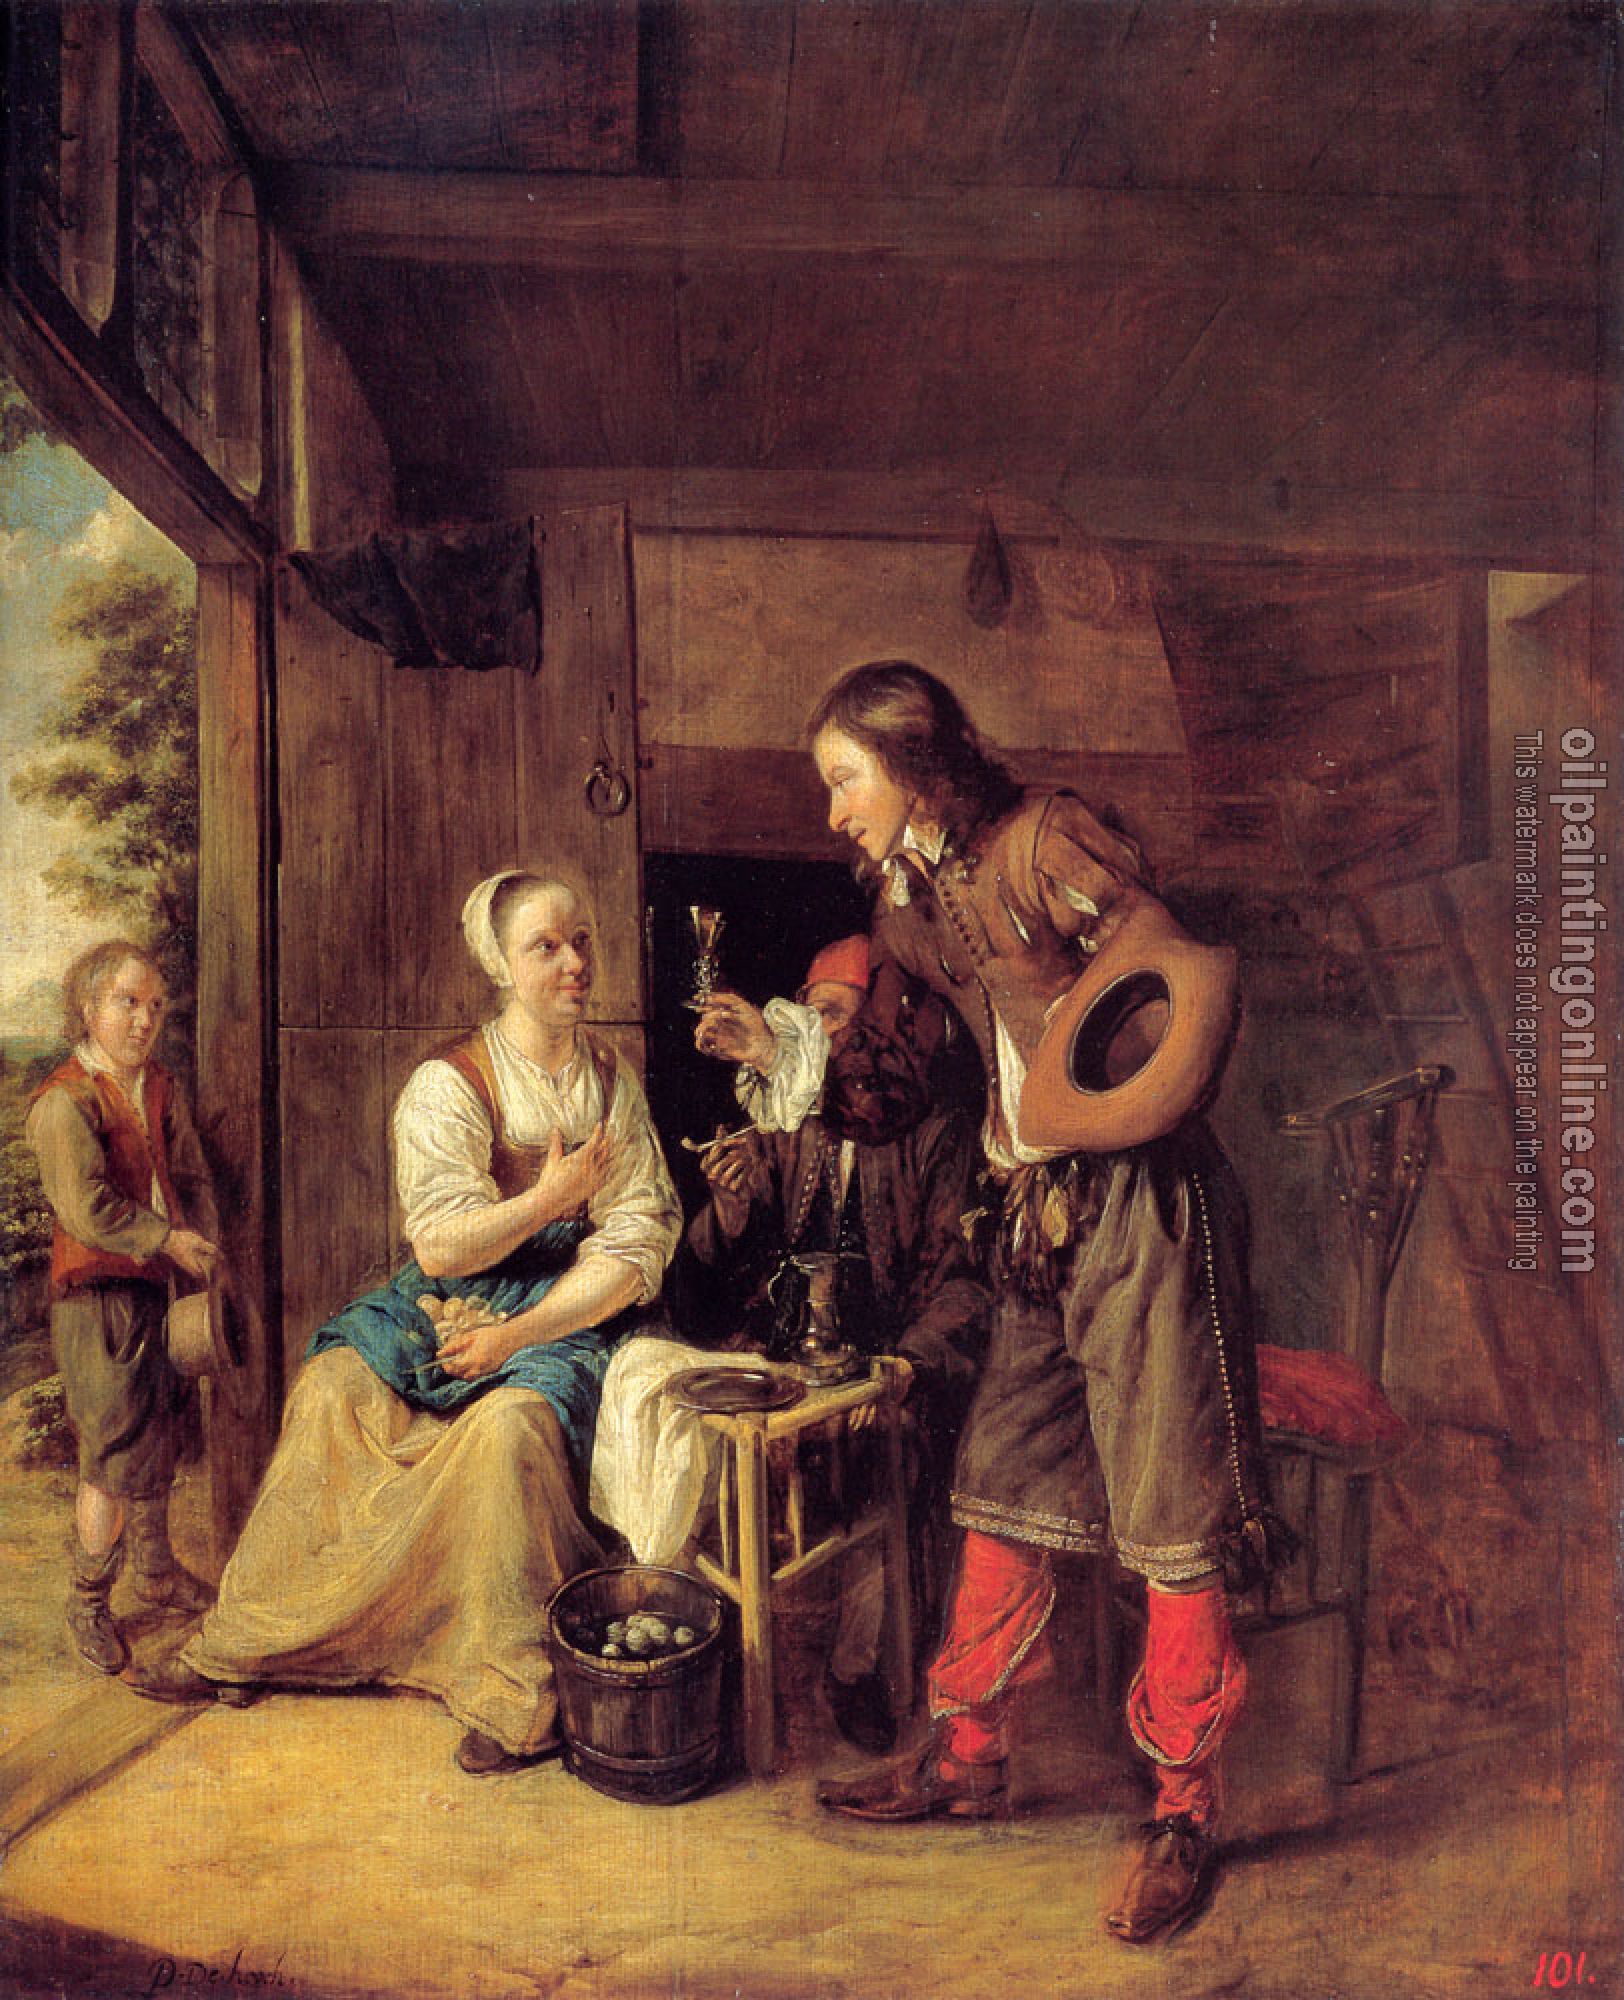 Pieter de Hooch - A Man Offering A Glass of Wine to a Woman